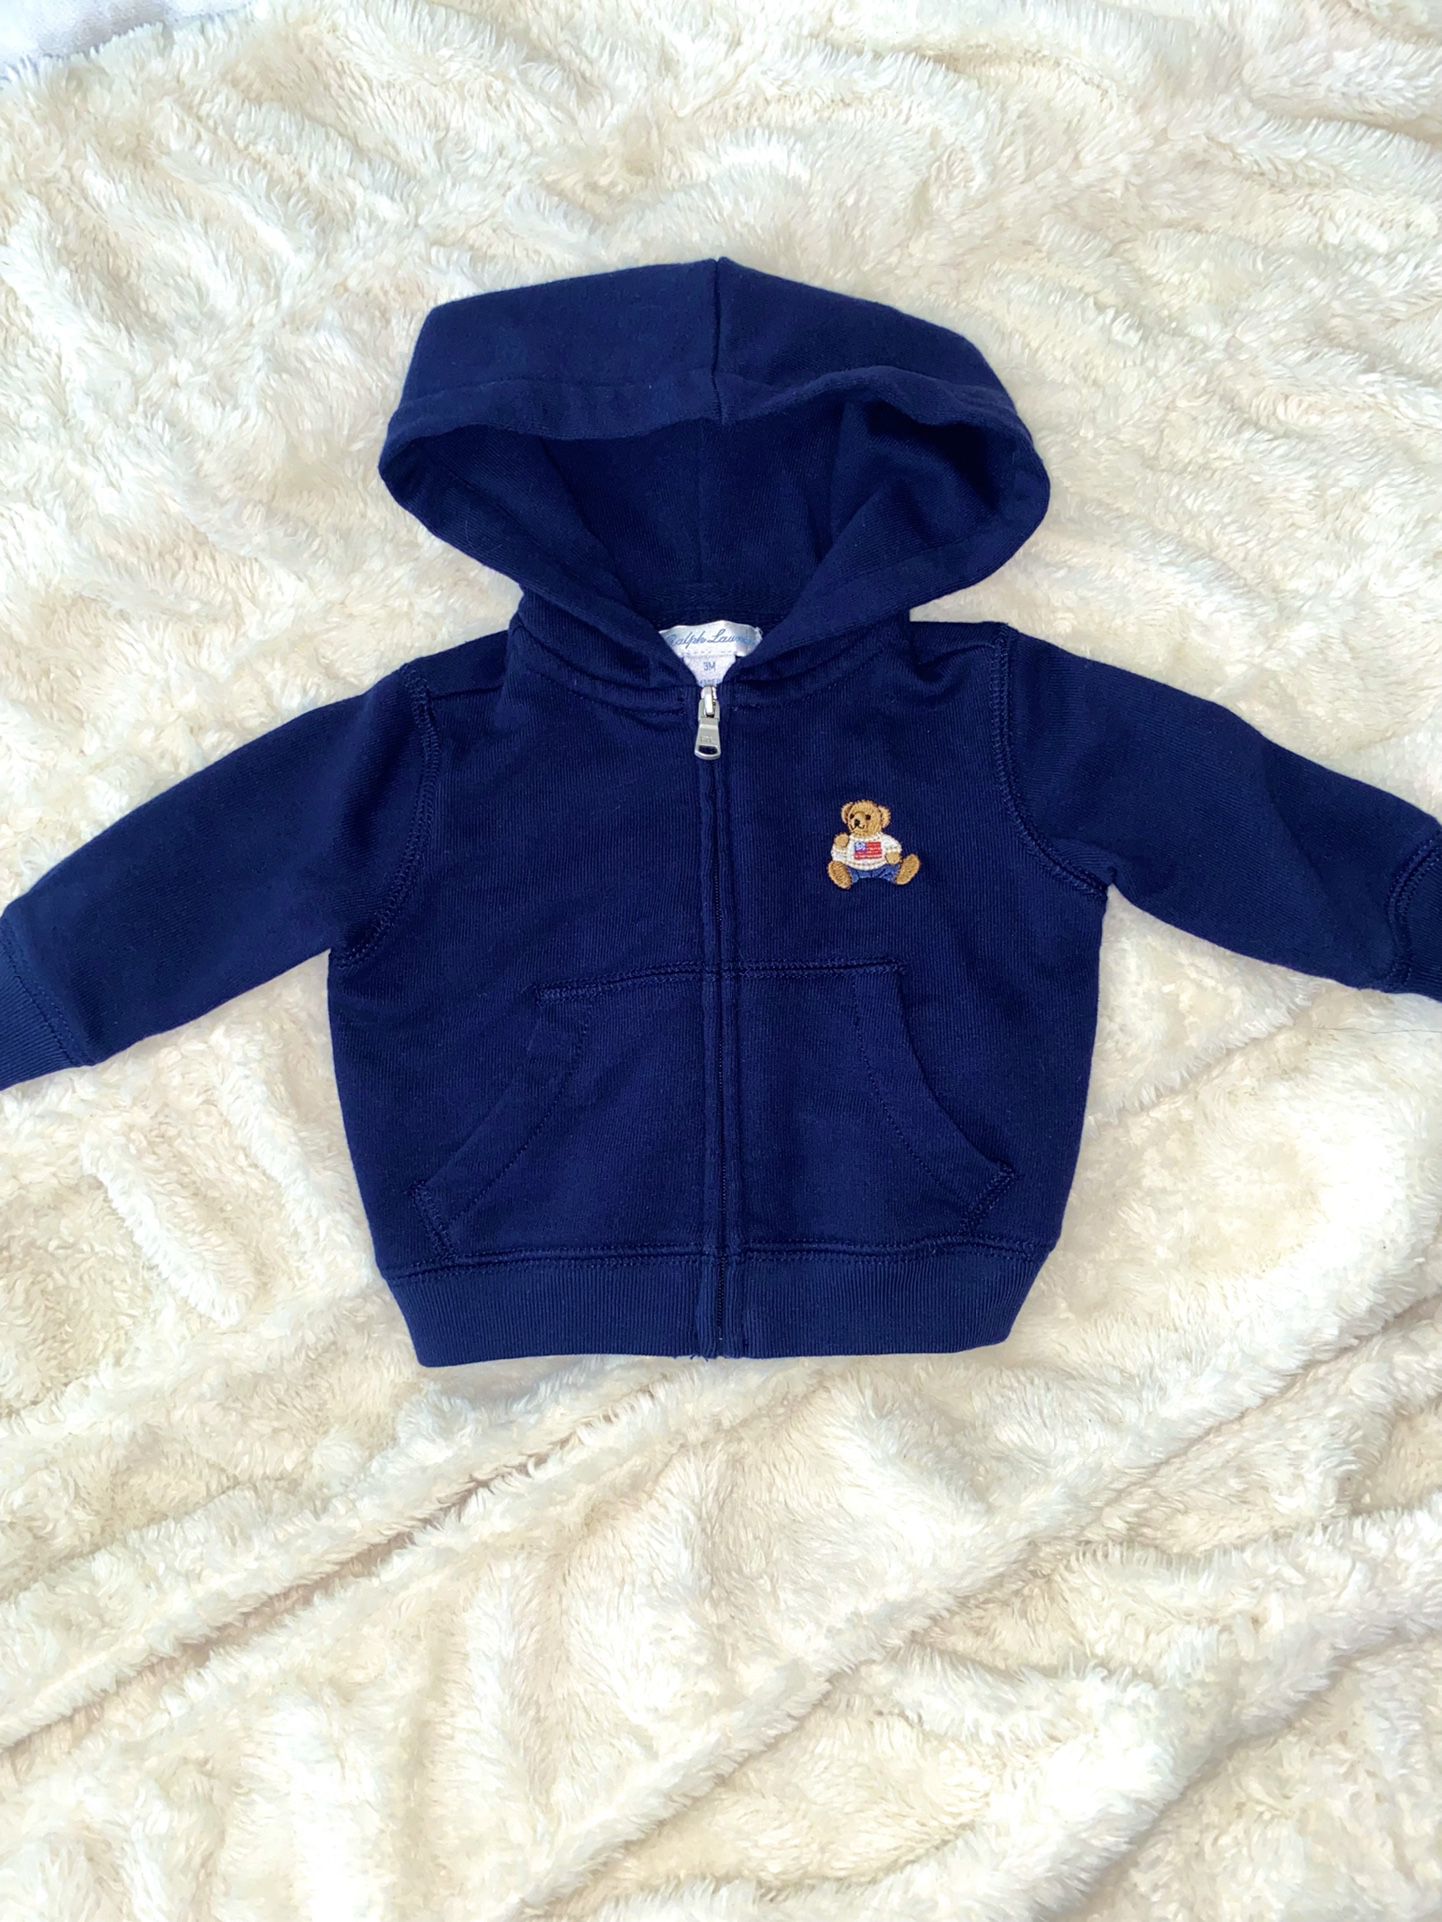 Ralph Lauren Baby Fleece Zip Up Jacket- Size 3 Months